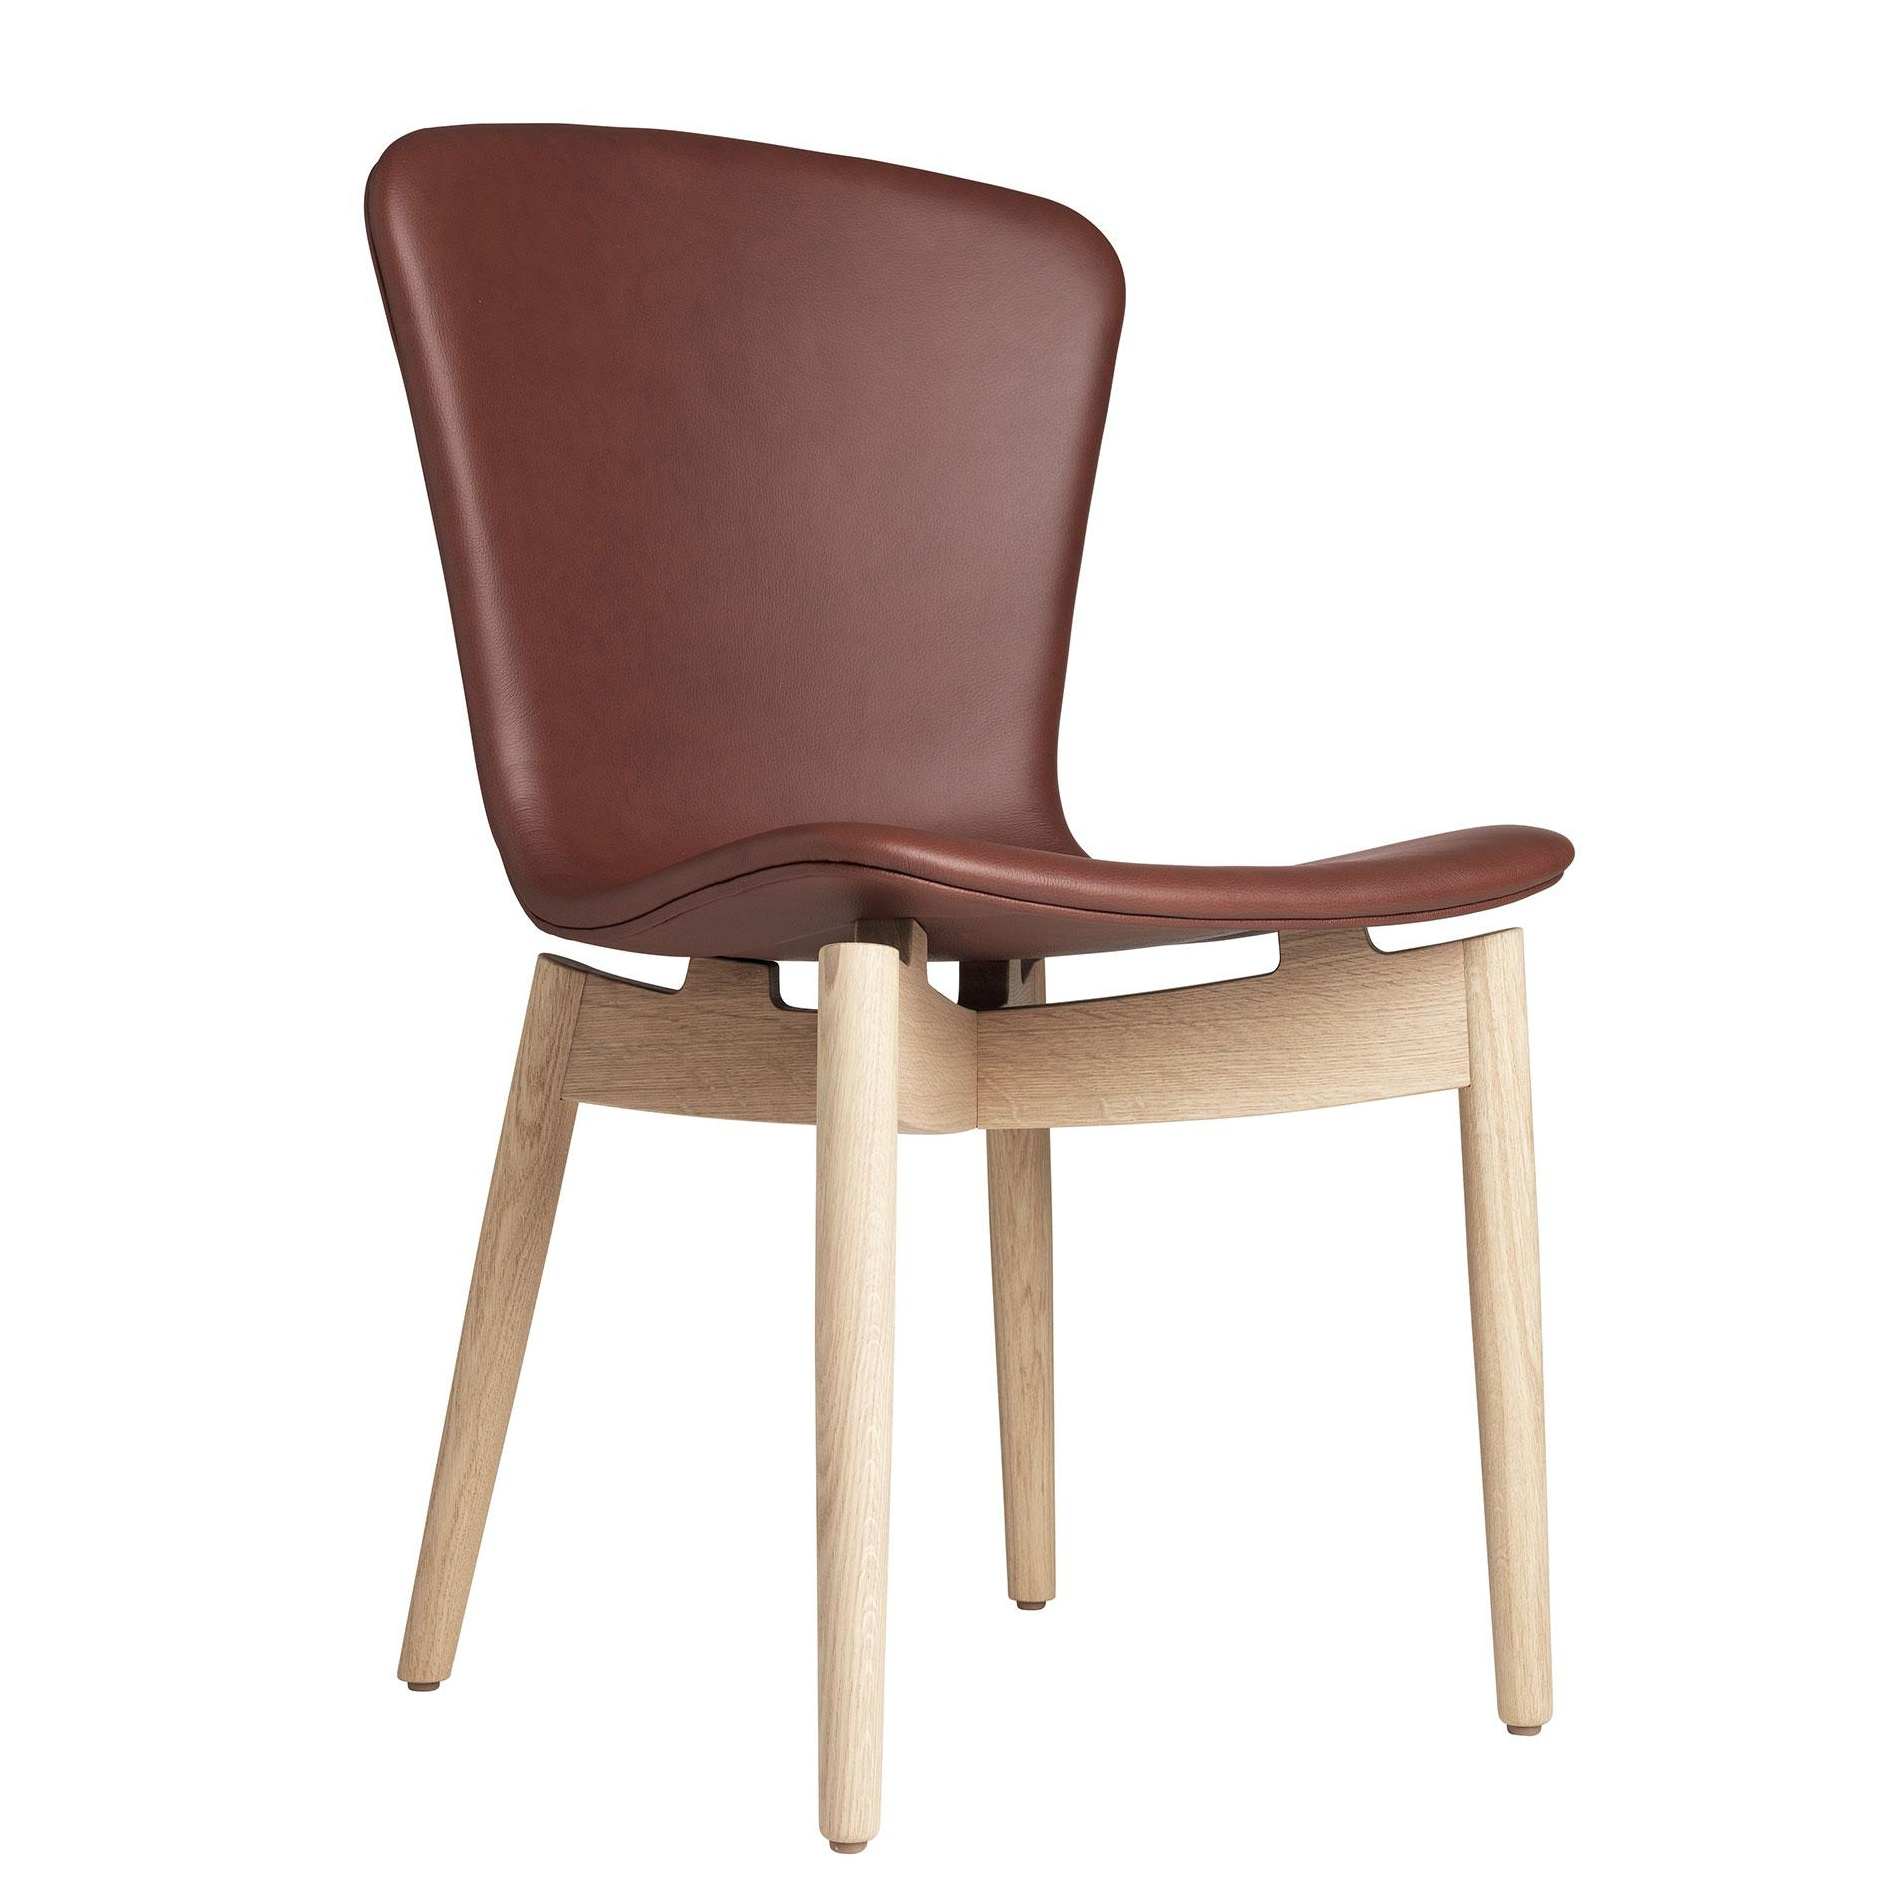 Mater - Shell Stuhl Gestell Eiche matt lackiert - cognac/Sitz Ultra Leder/Füße Eiche matt lackiert/BxHxT 49x87x57cm von Mater